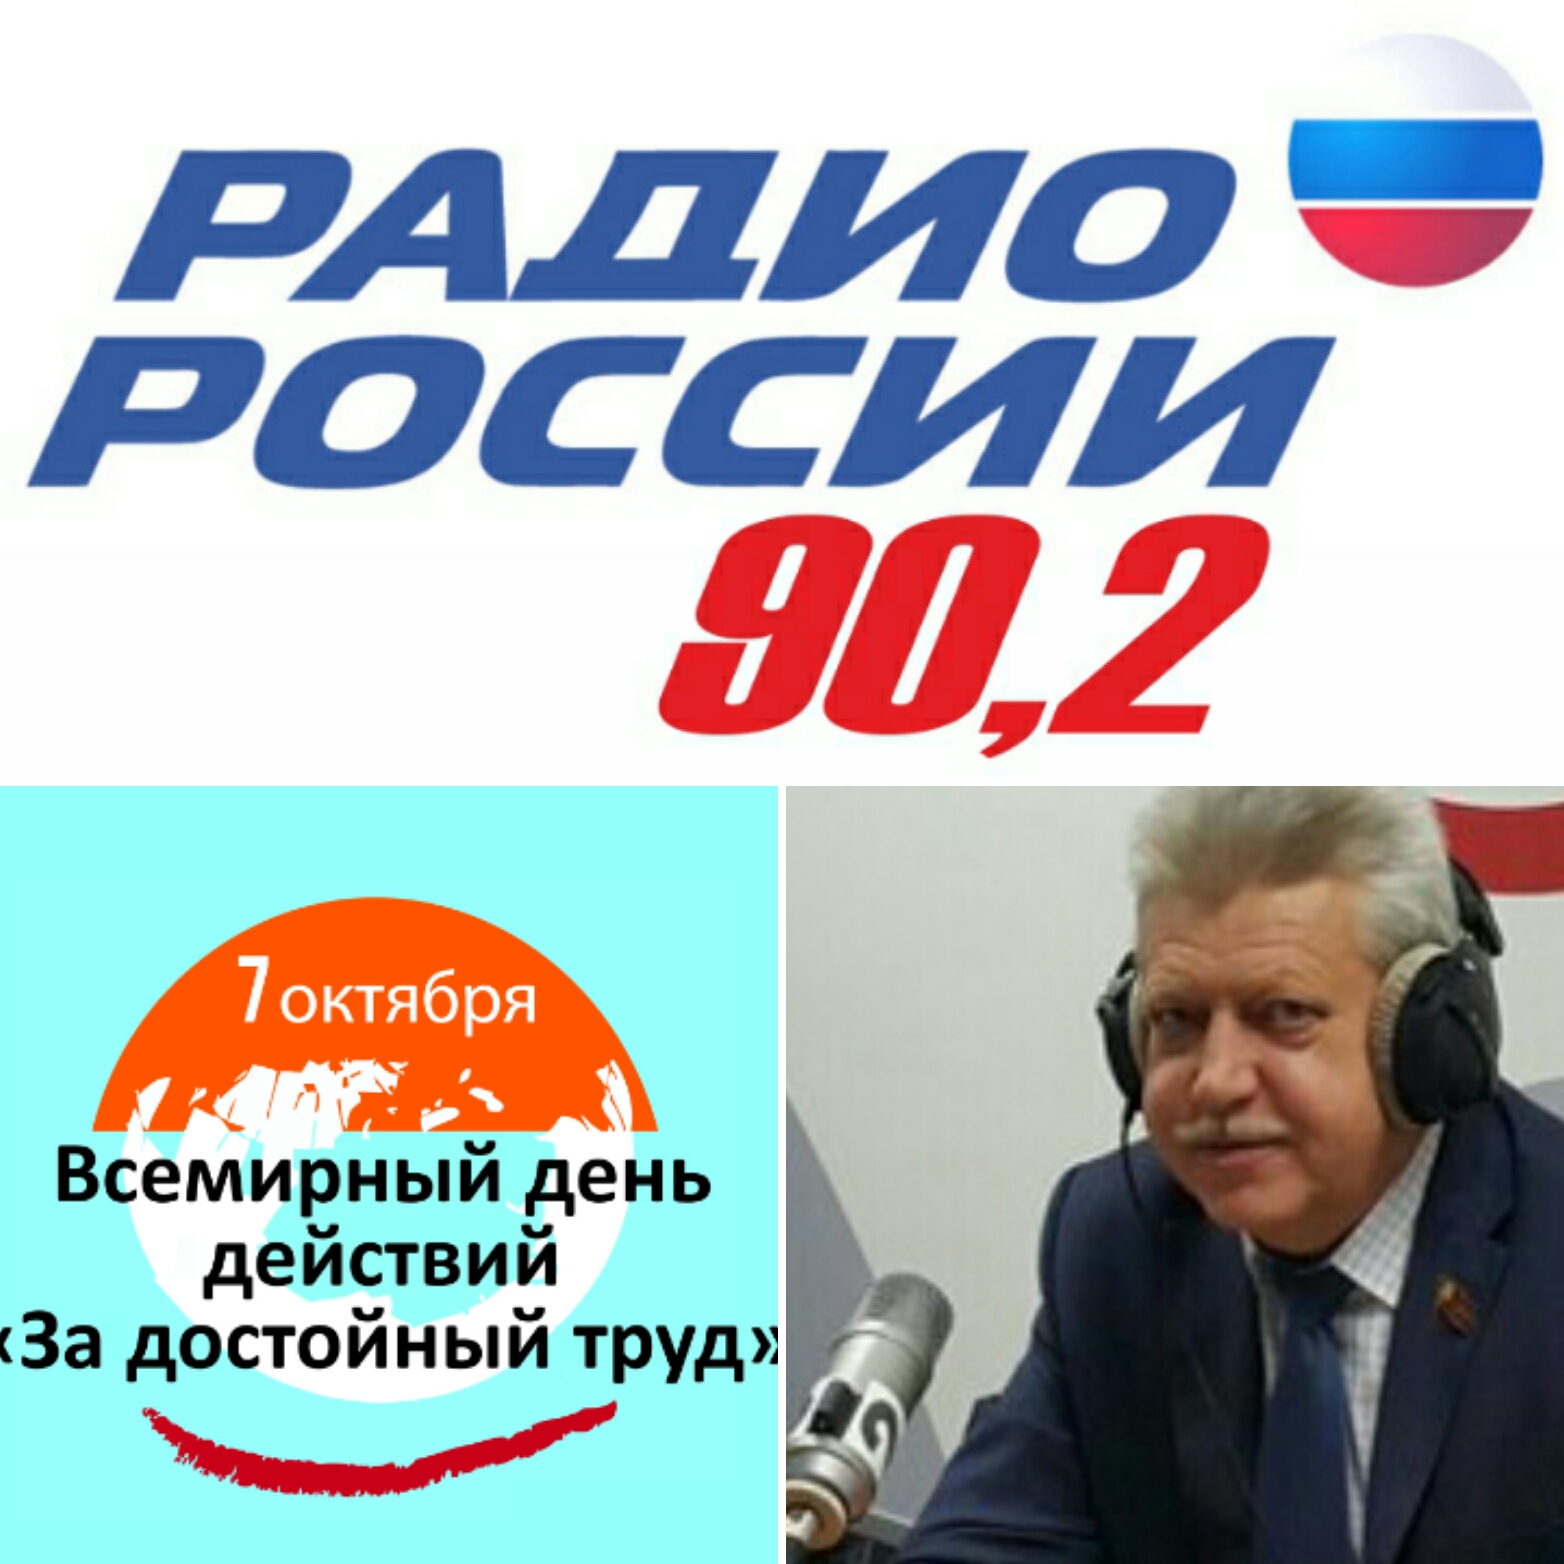 28.09.16 в 18:30 на Радио Россия в программе «откровенный разговор» слушайте в прямом эфире Председателя МФП М.И. Антонцева.